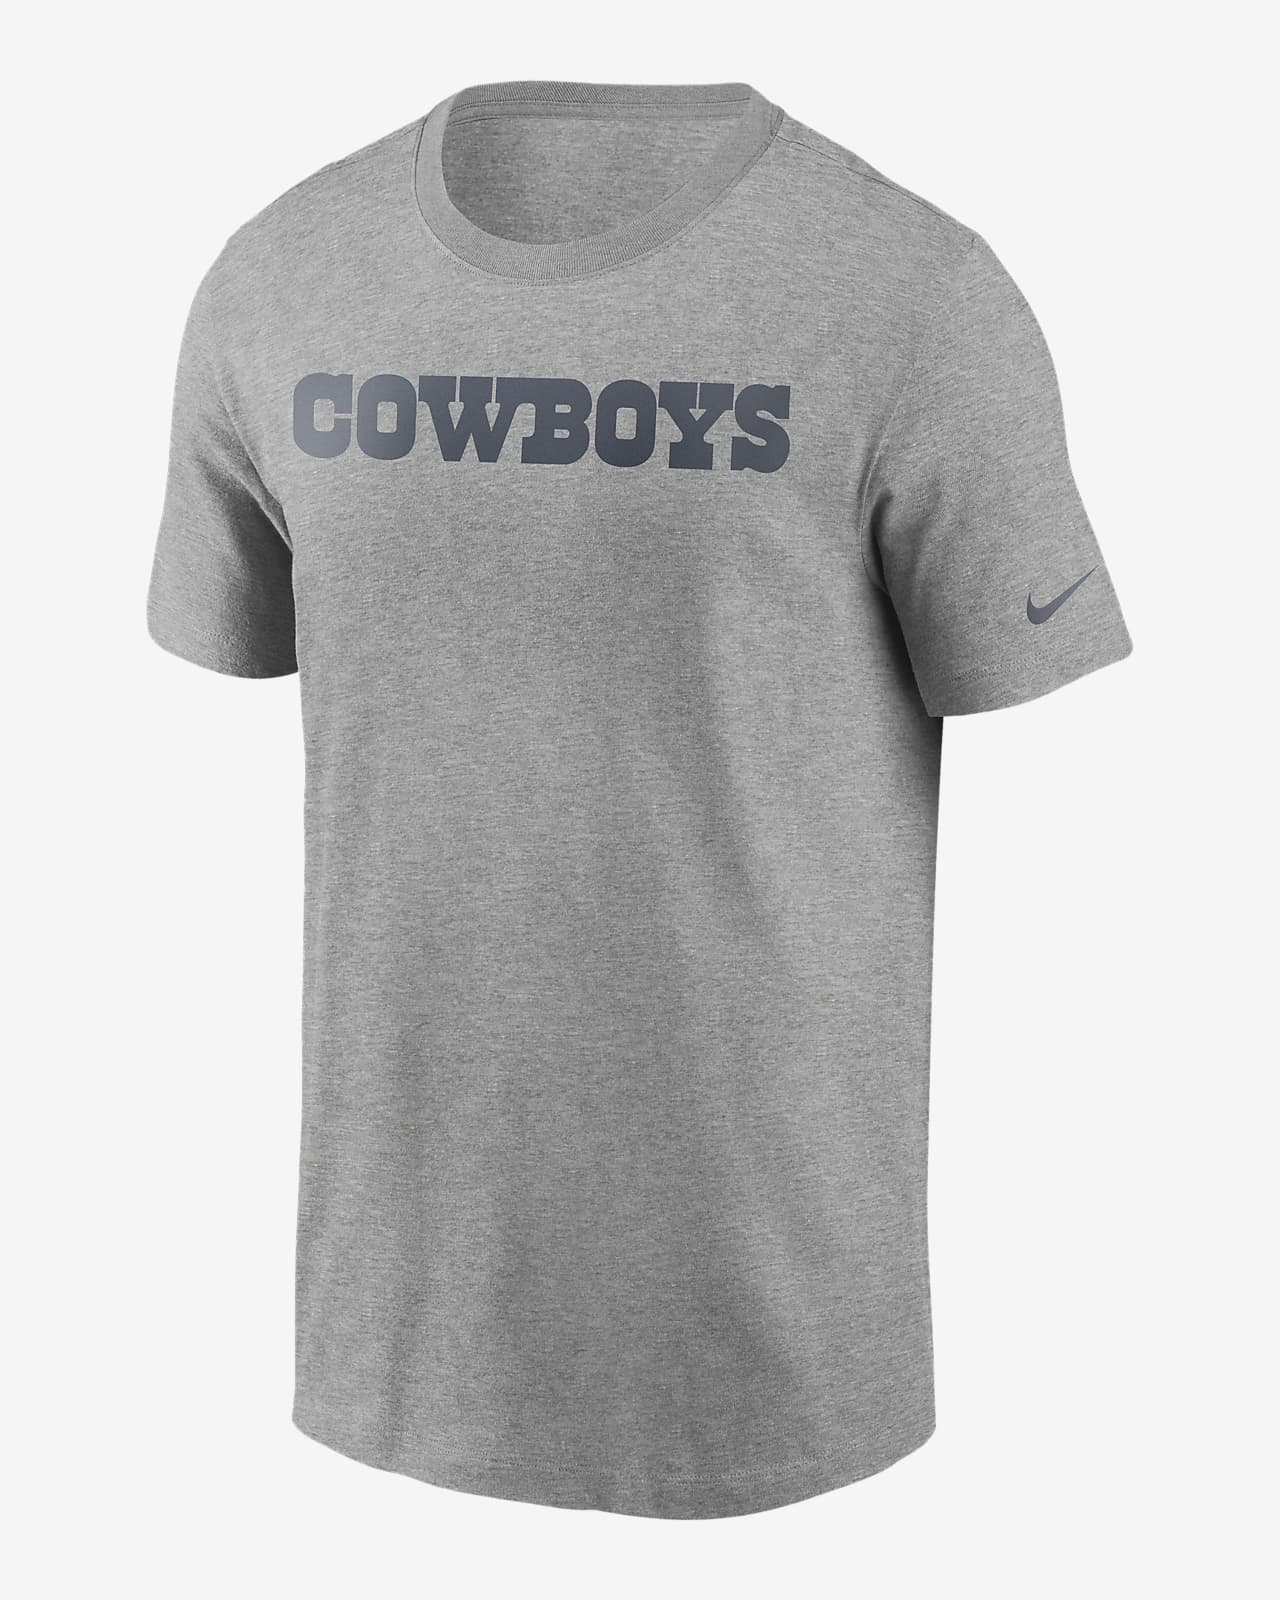 Nike (NFL Cowboys) Men's T-Shirt. Nike.com